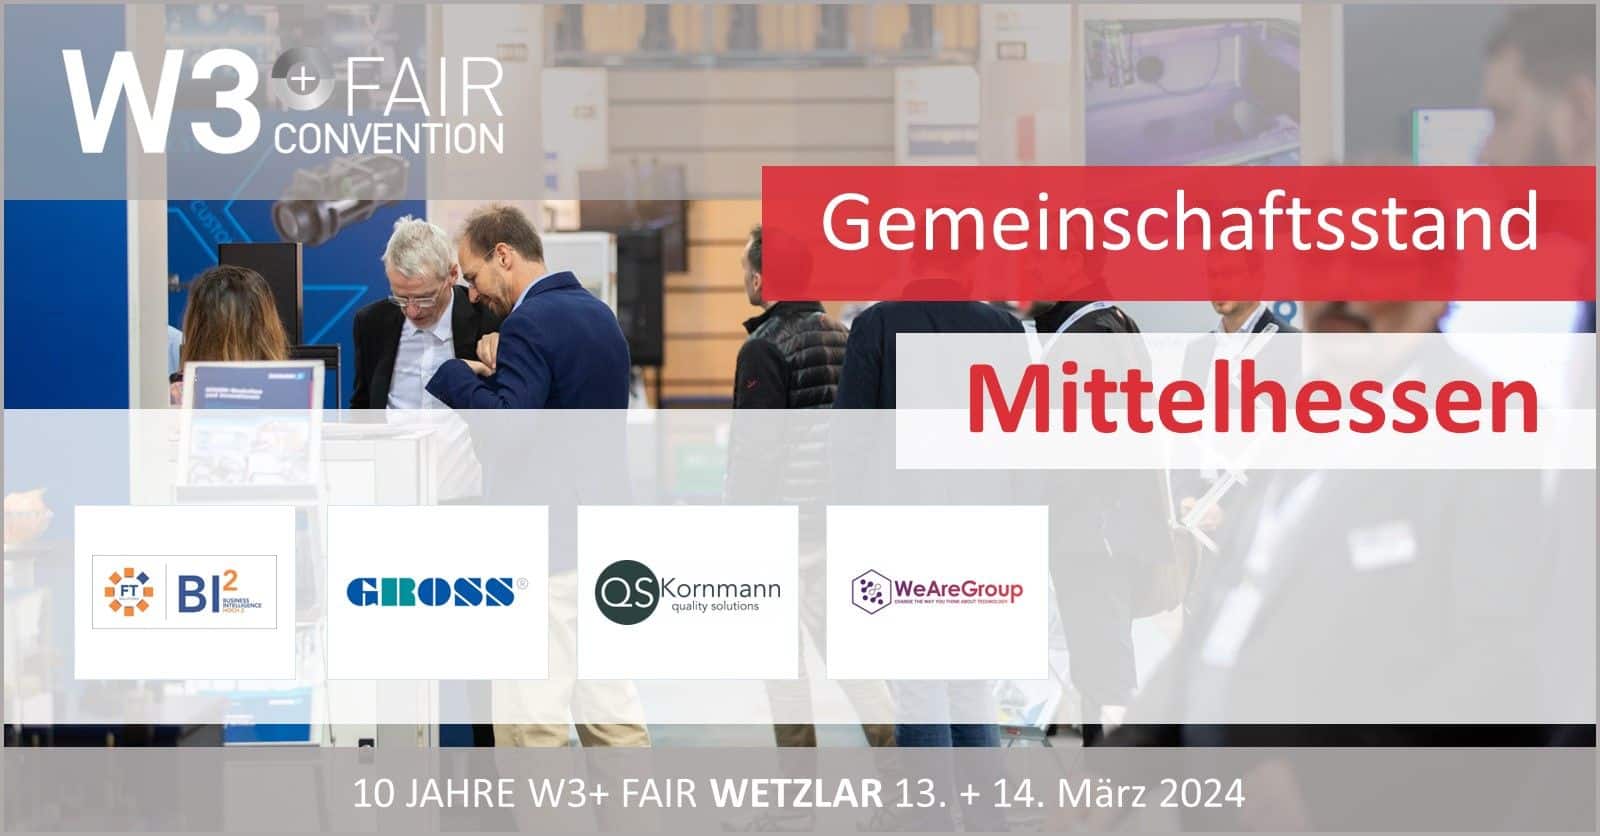 Gemeinschaftsstand Mittelhessen auf der W3+ Fair in Wetzlar 2024